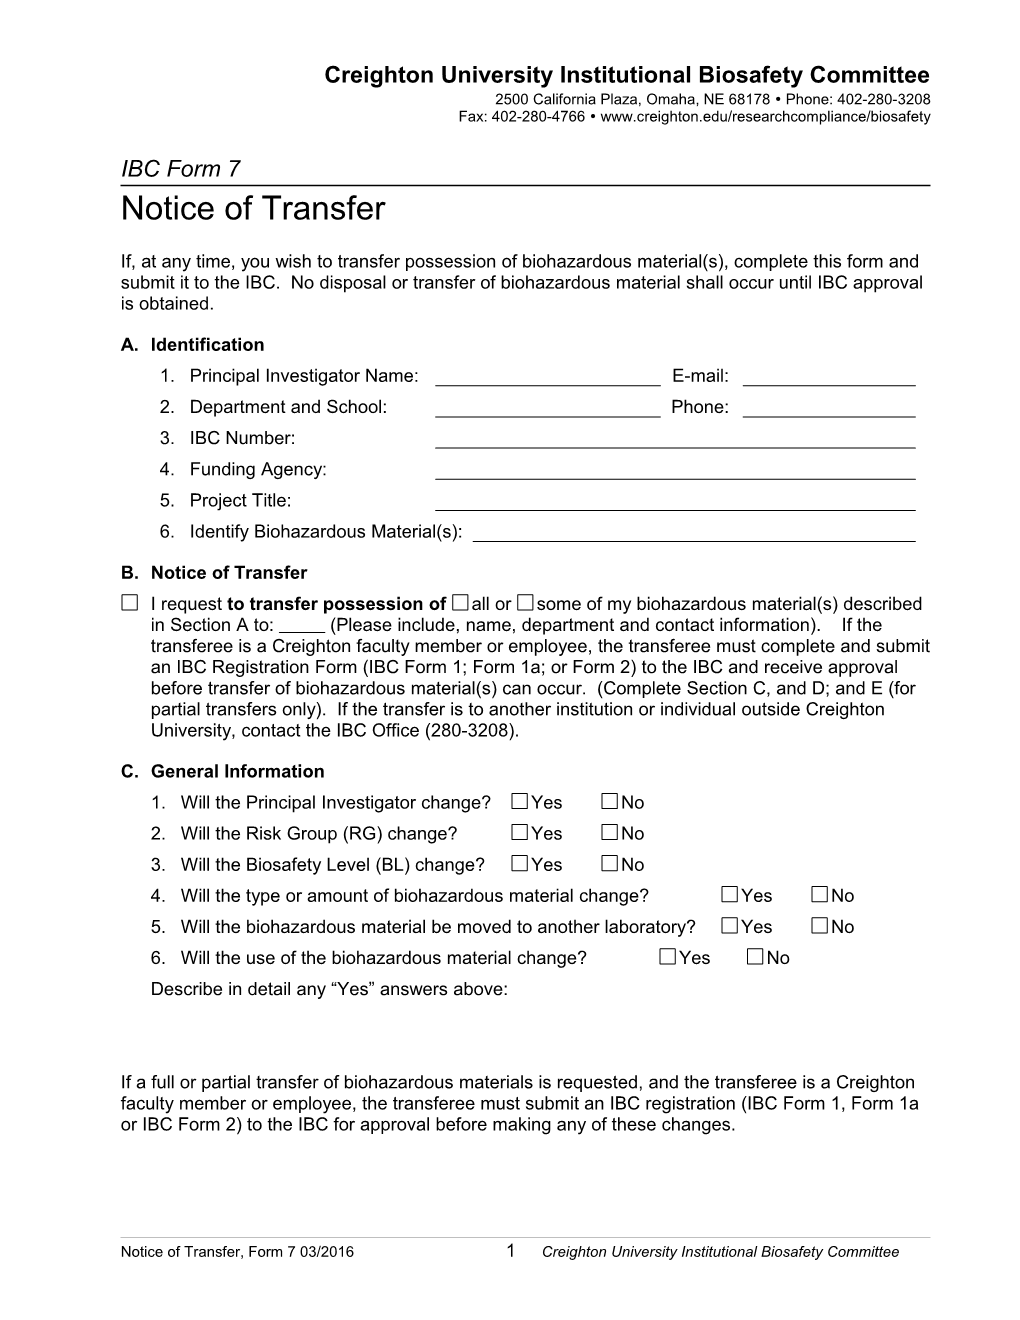 B. Notice of Transfer